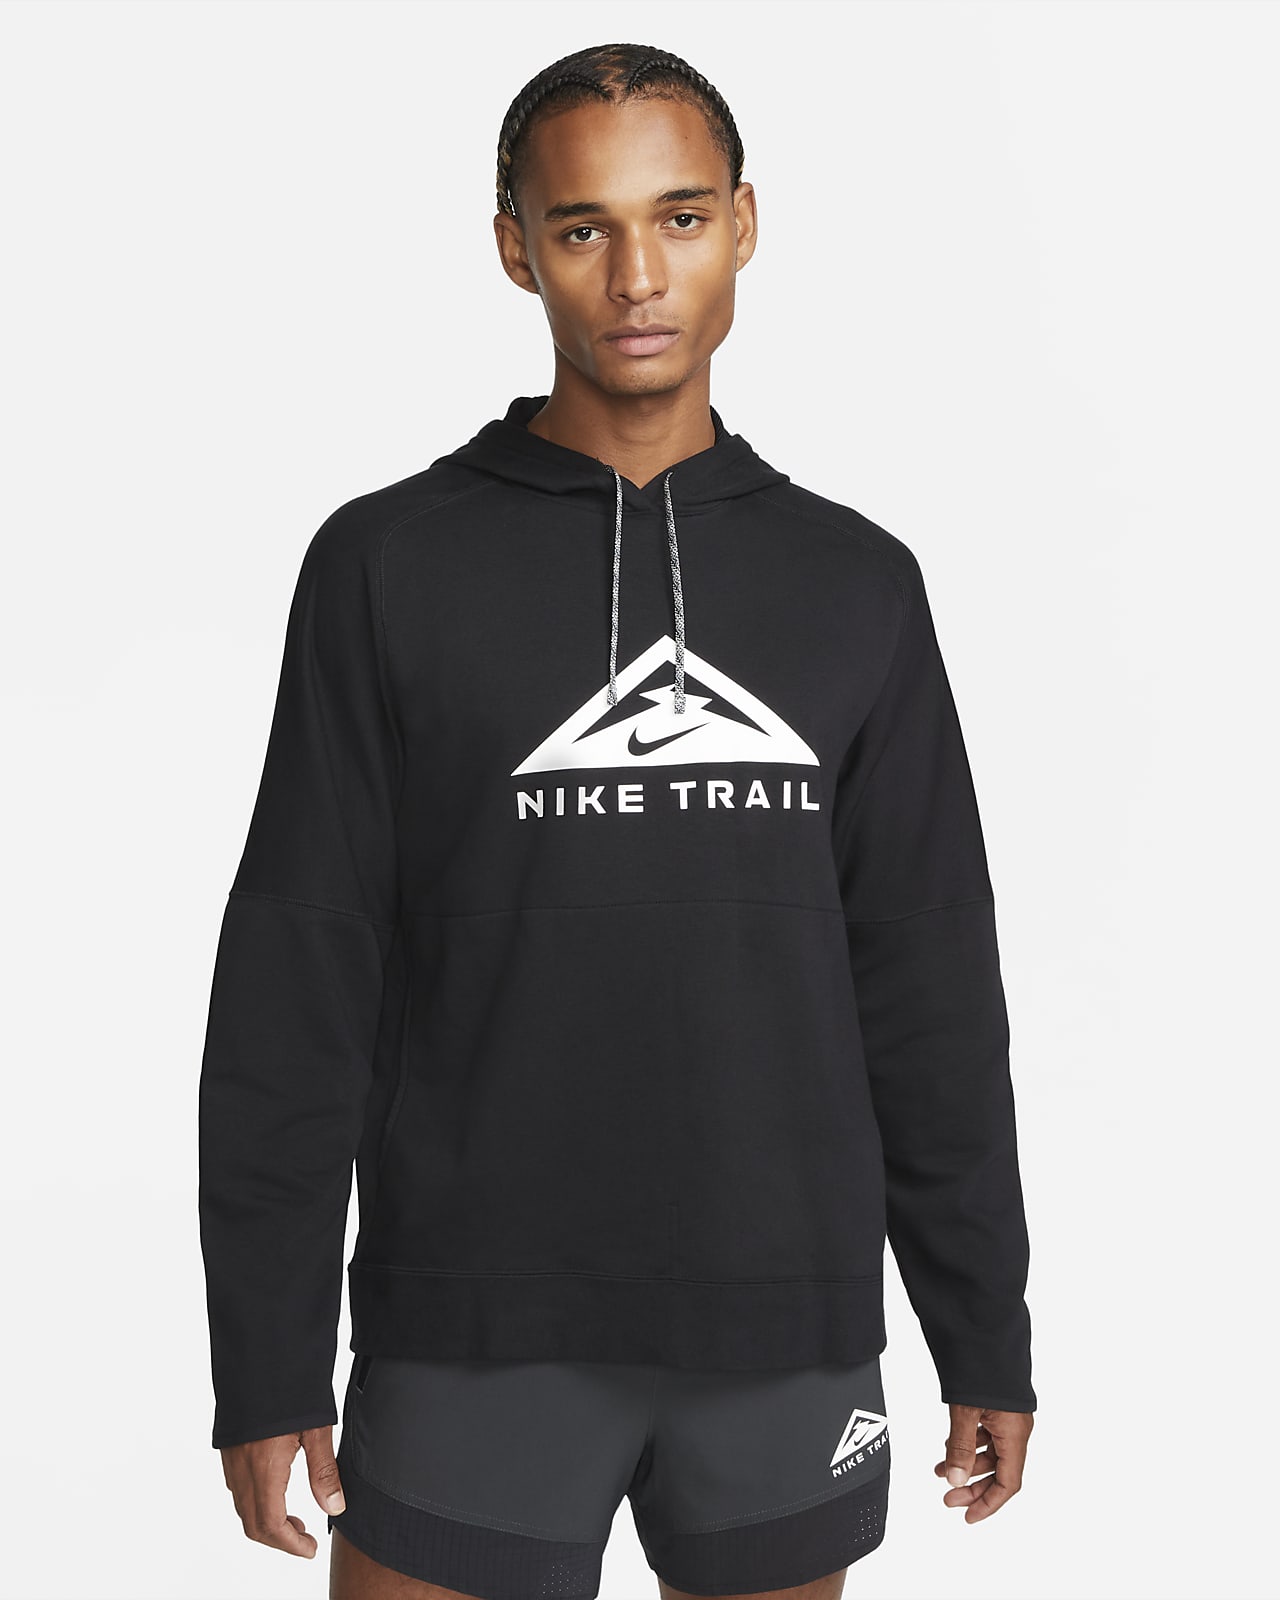 Nike Trail Magic Hour Dri-FIT hettegenser for terrengløping til herre